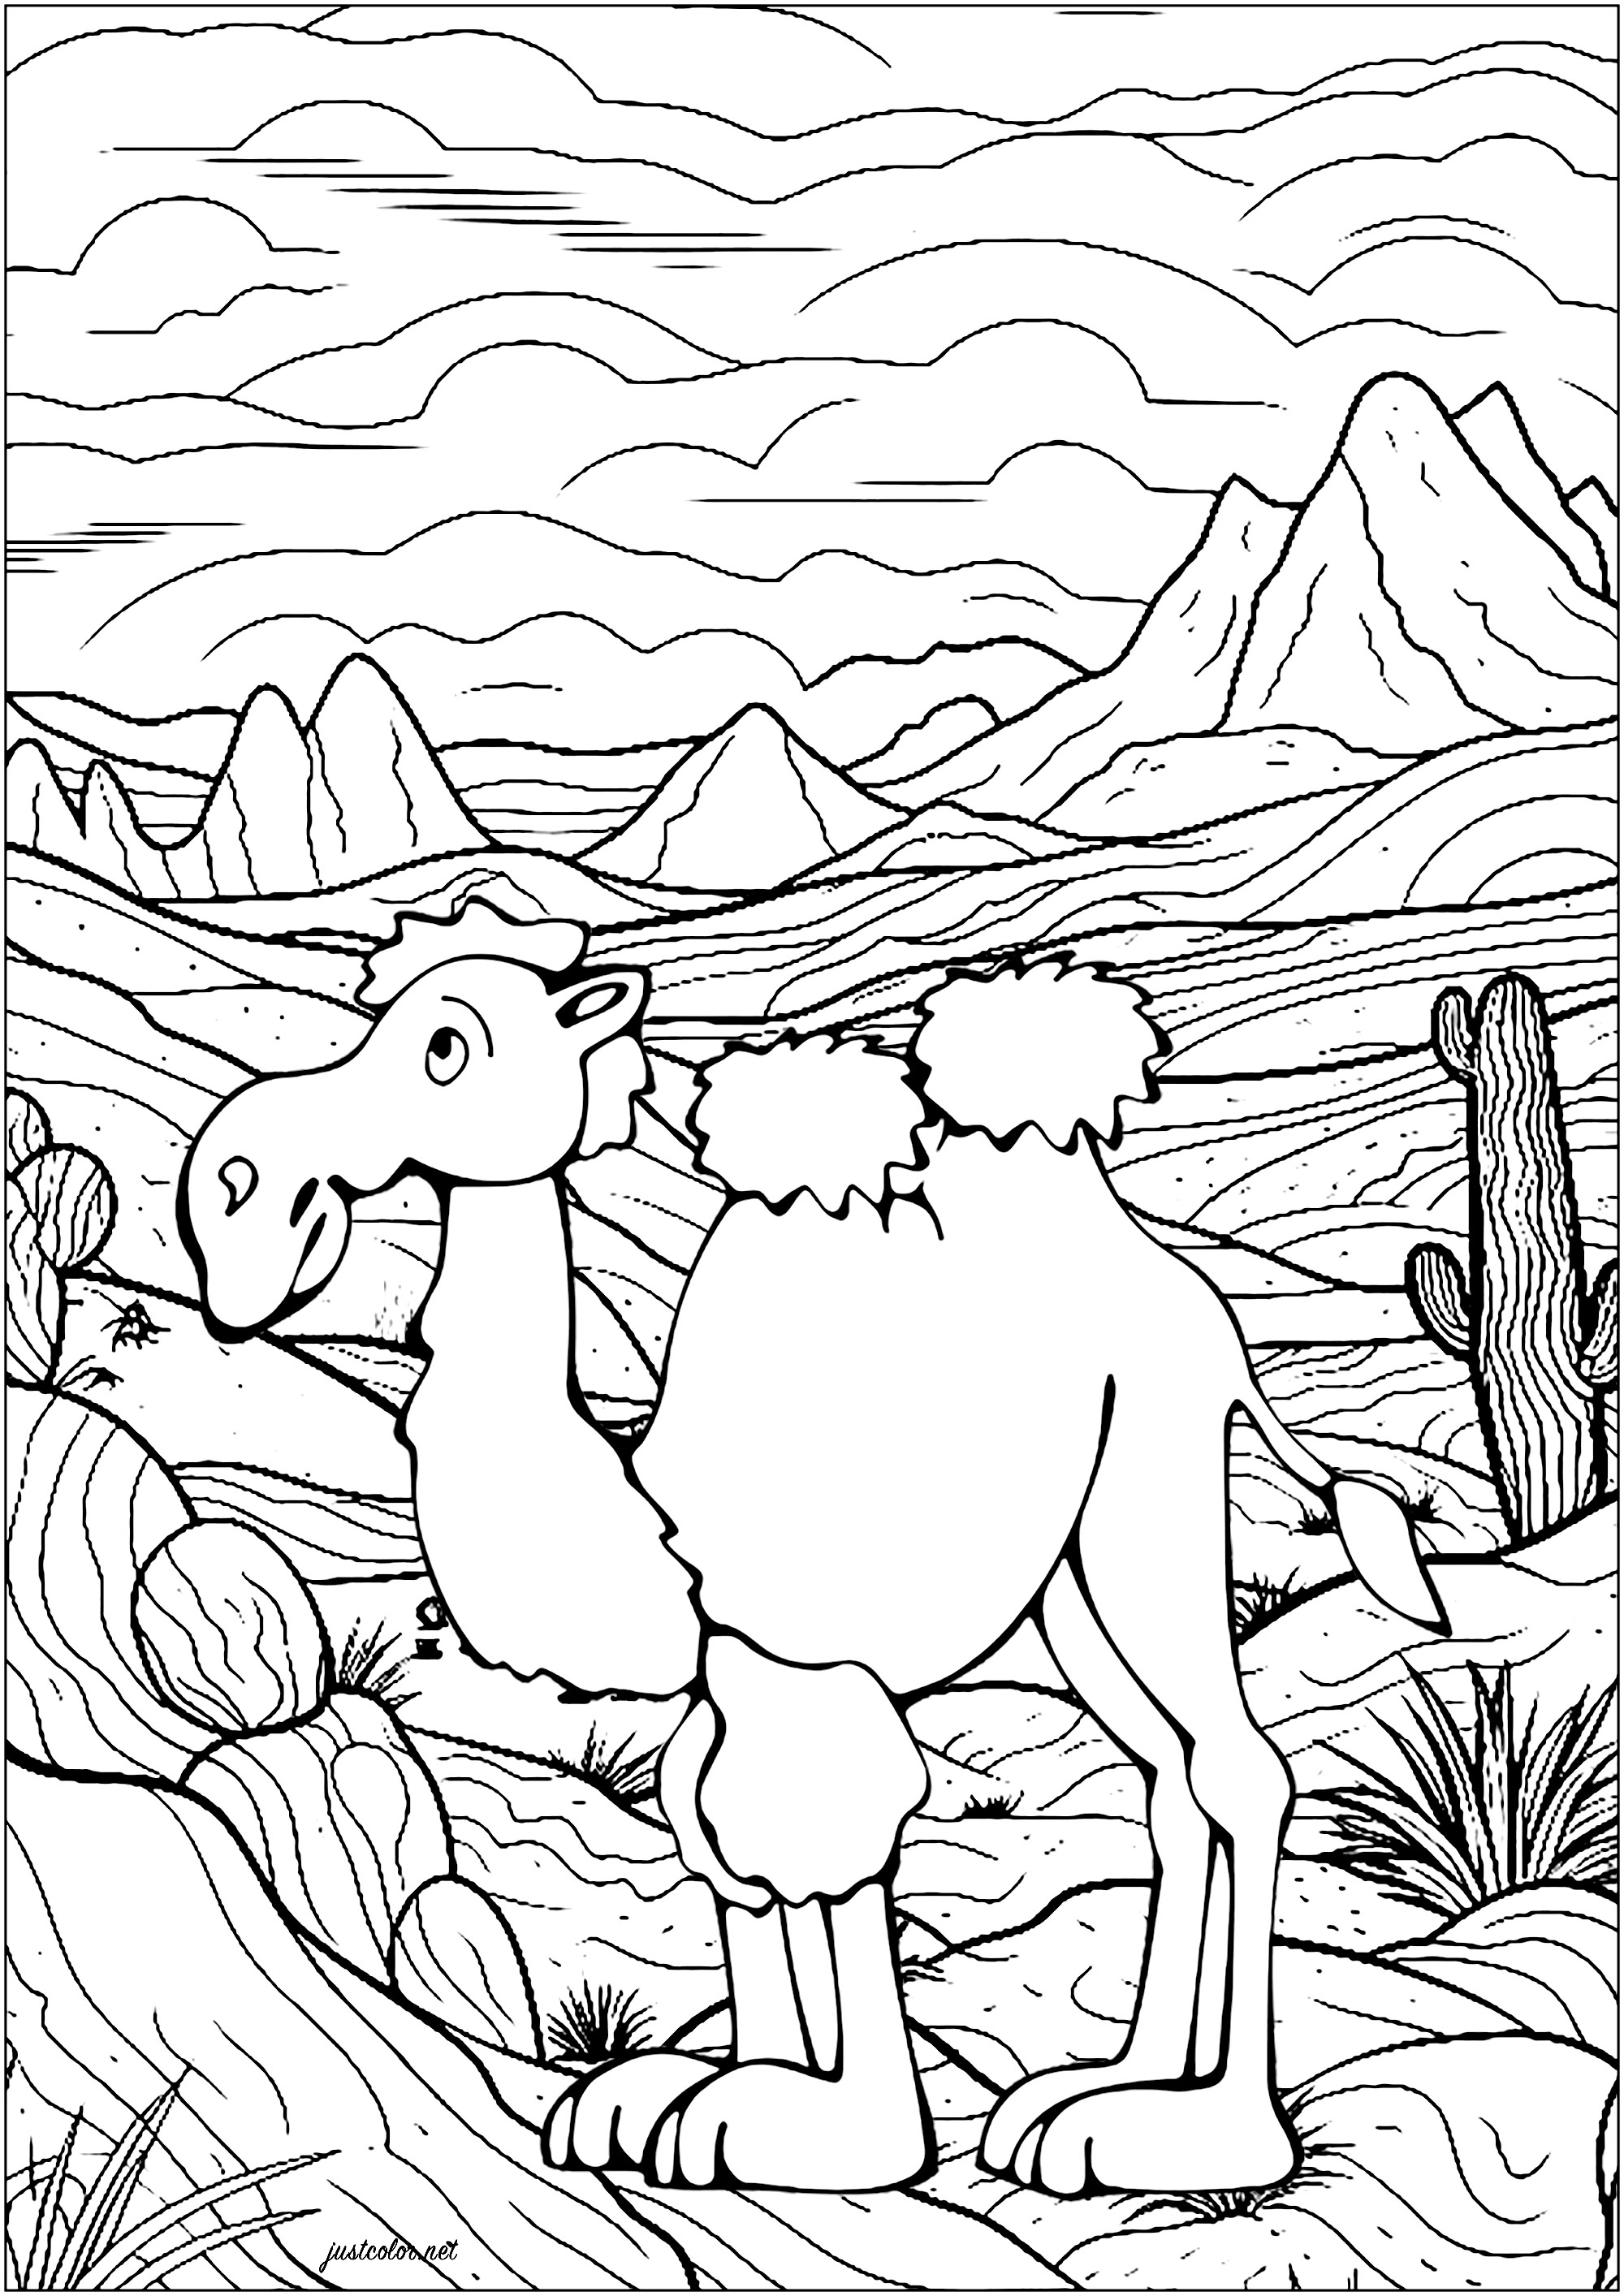 Chameau dans le désert. Coloriage d'un chameau dans le désert, avec nombreux détails en arrière-plan : montagnes, cactus, ciel nuageux ...